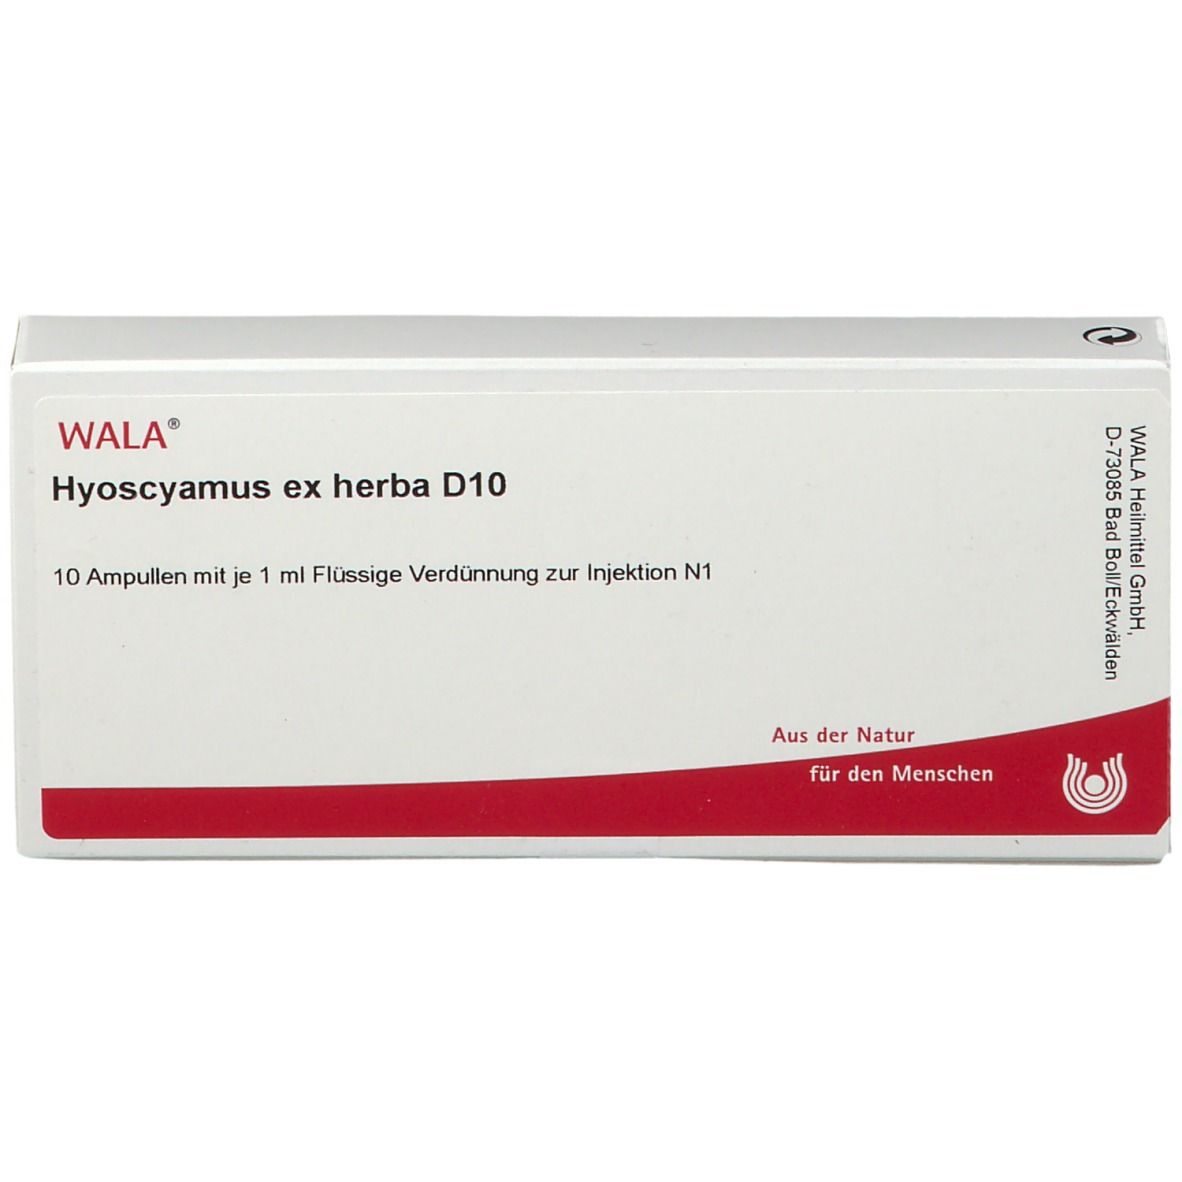 WALA® Hyoscyamus ex herba D 10